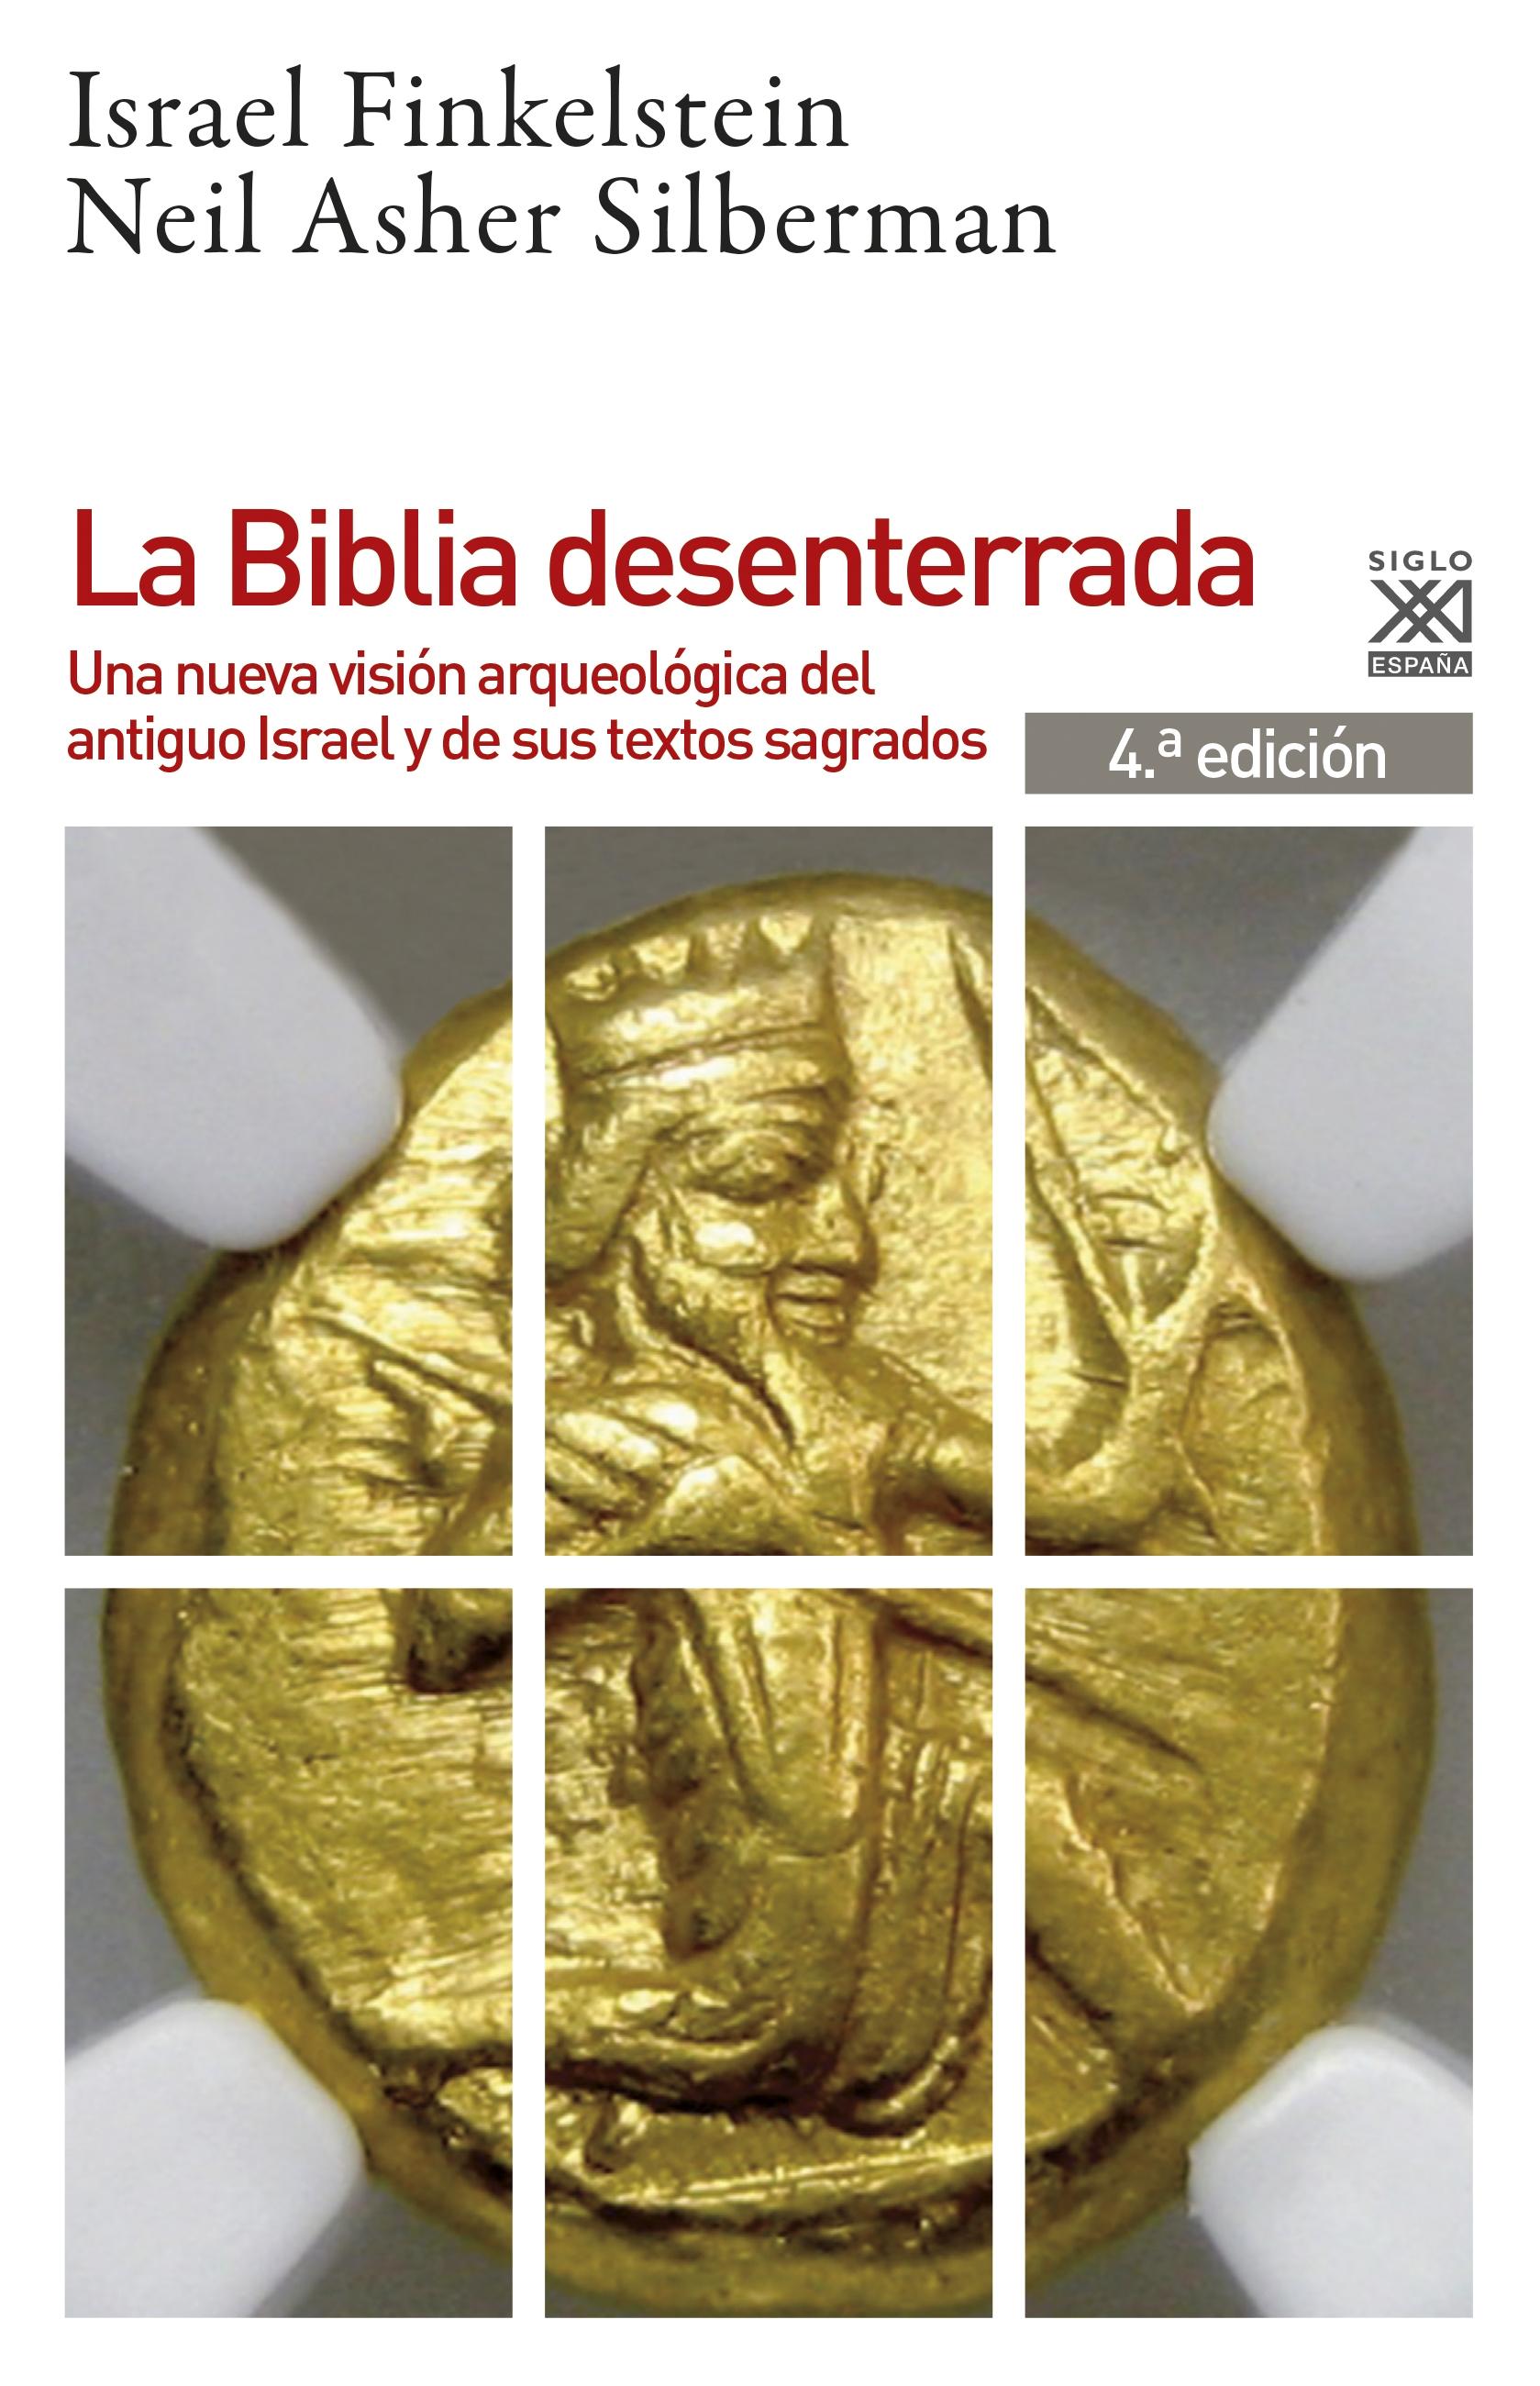 La Biblia desenterrada "Una nueva visión arqueológica del antiguo Israel y de los orígenes de sus textos sagrados". 